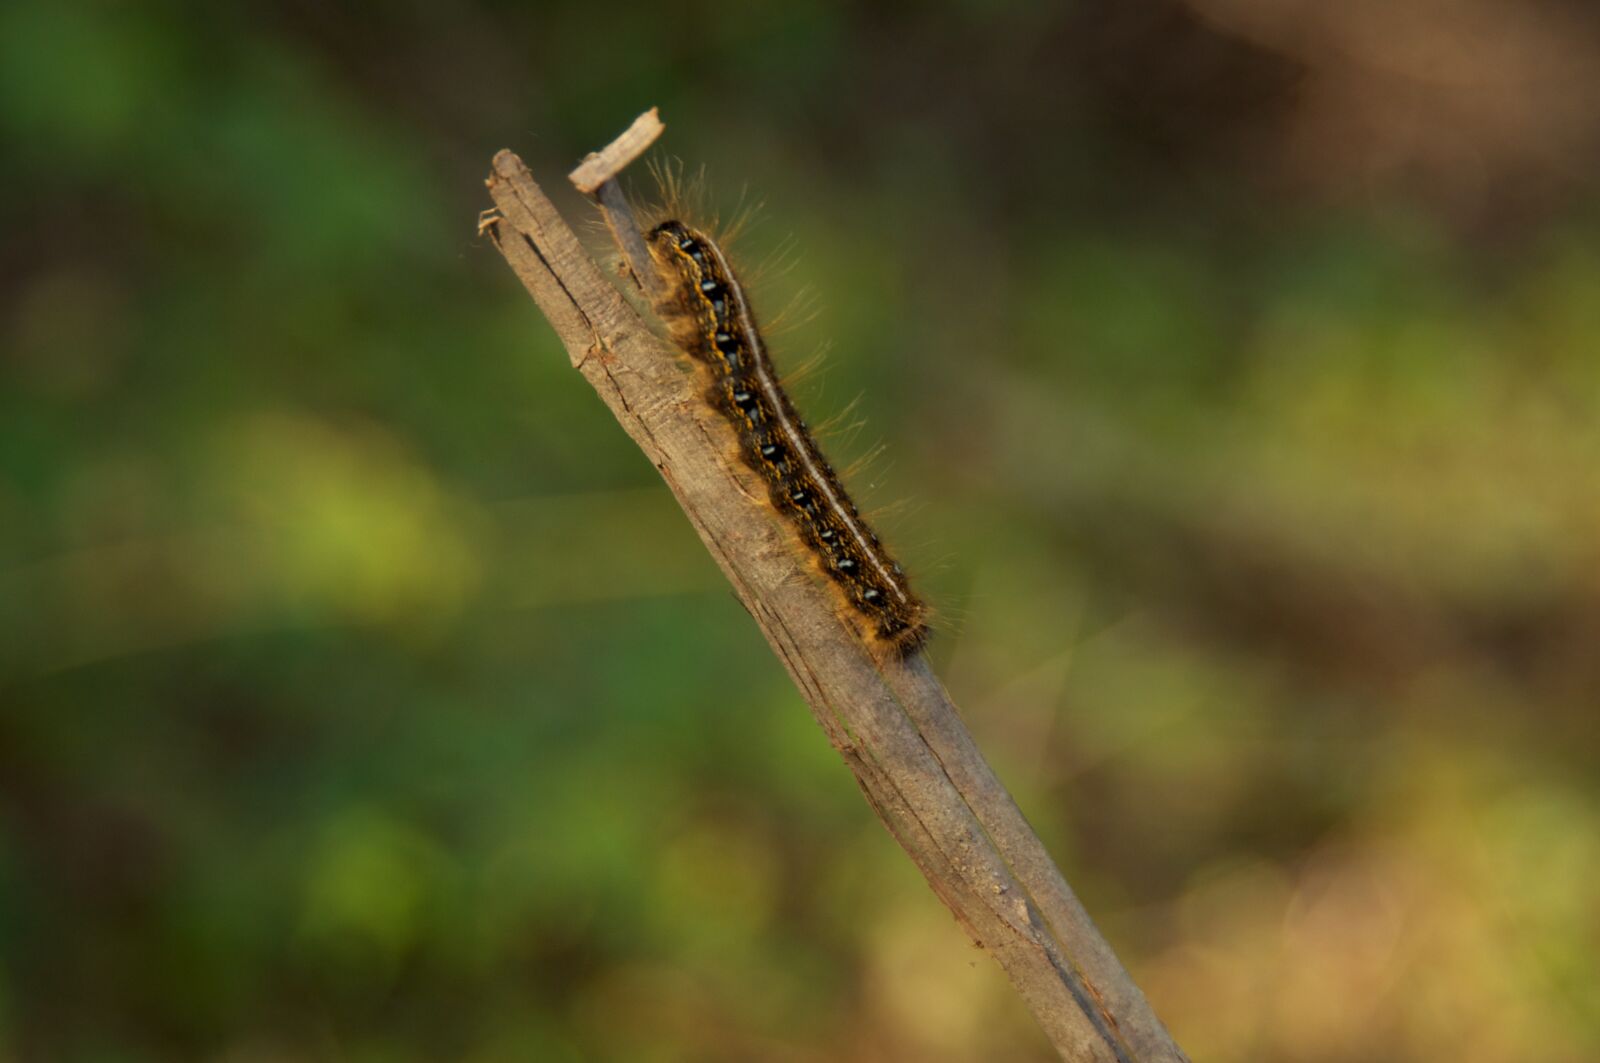 Nikon D90 sample photo. Caterpillar, stick, nature photography